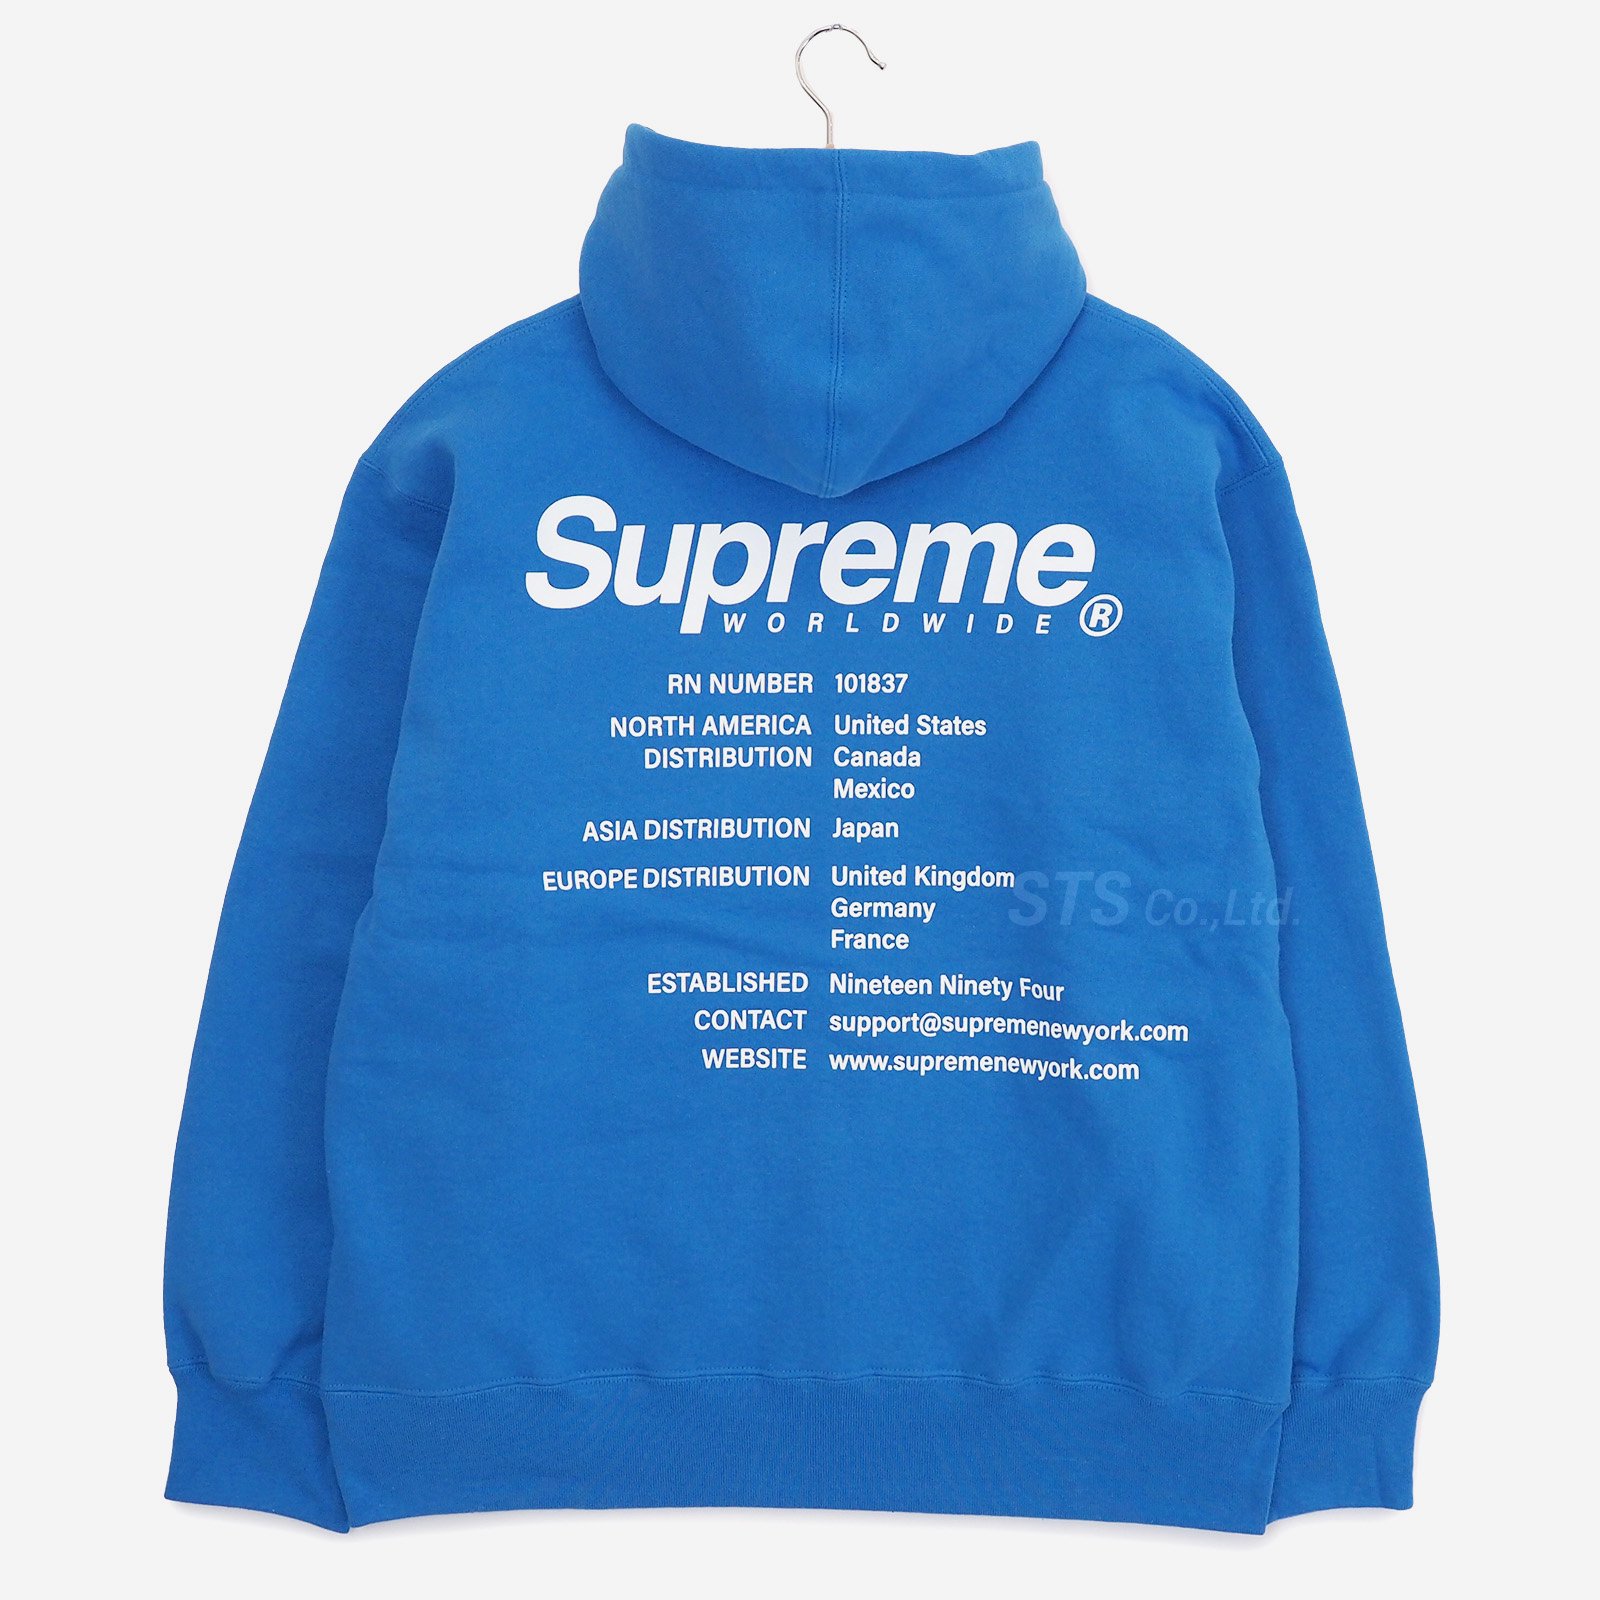 10,580円supreme Worldwide Hooded Sweatshirt XXL